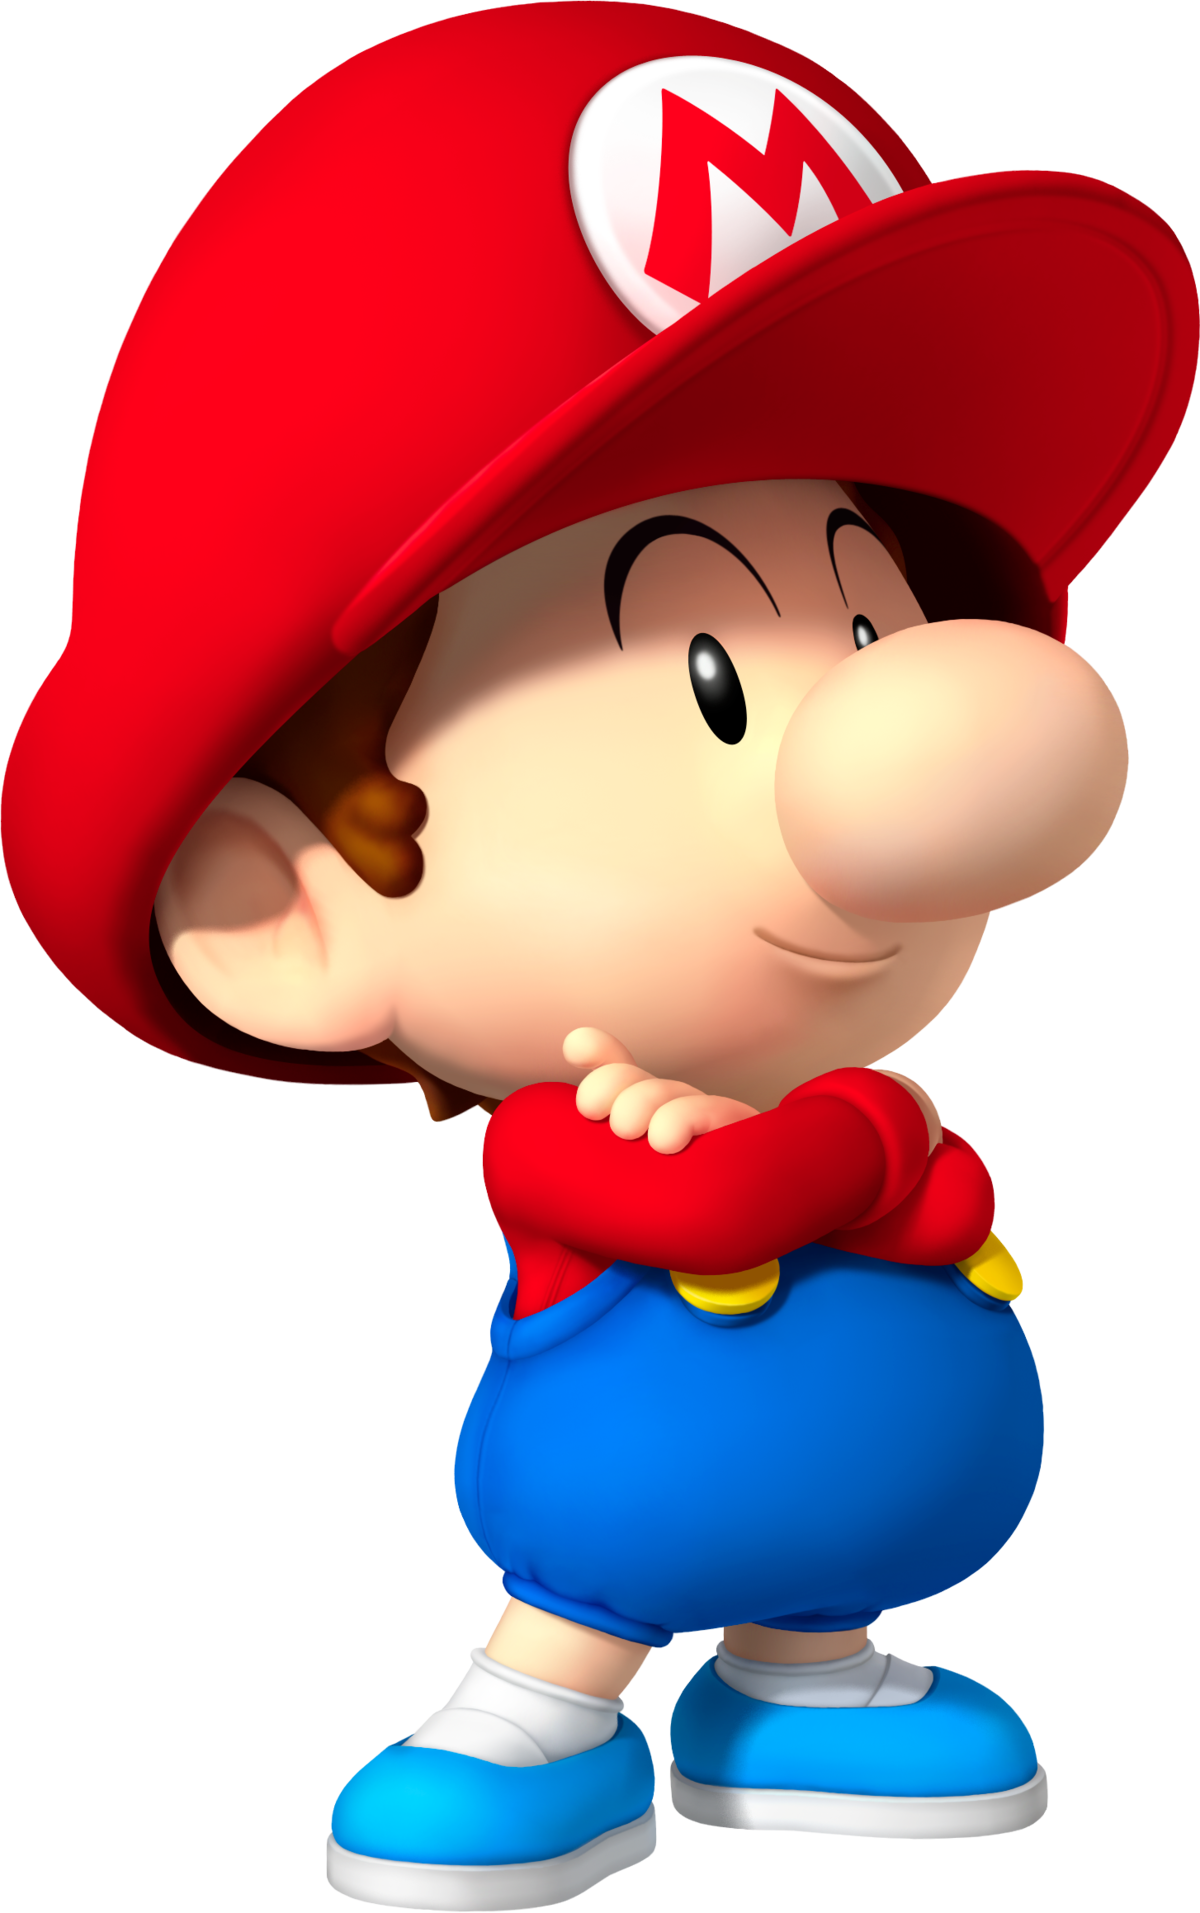 Rabbid Peach - Super Mario Wiki, the Mario encyclopedia